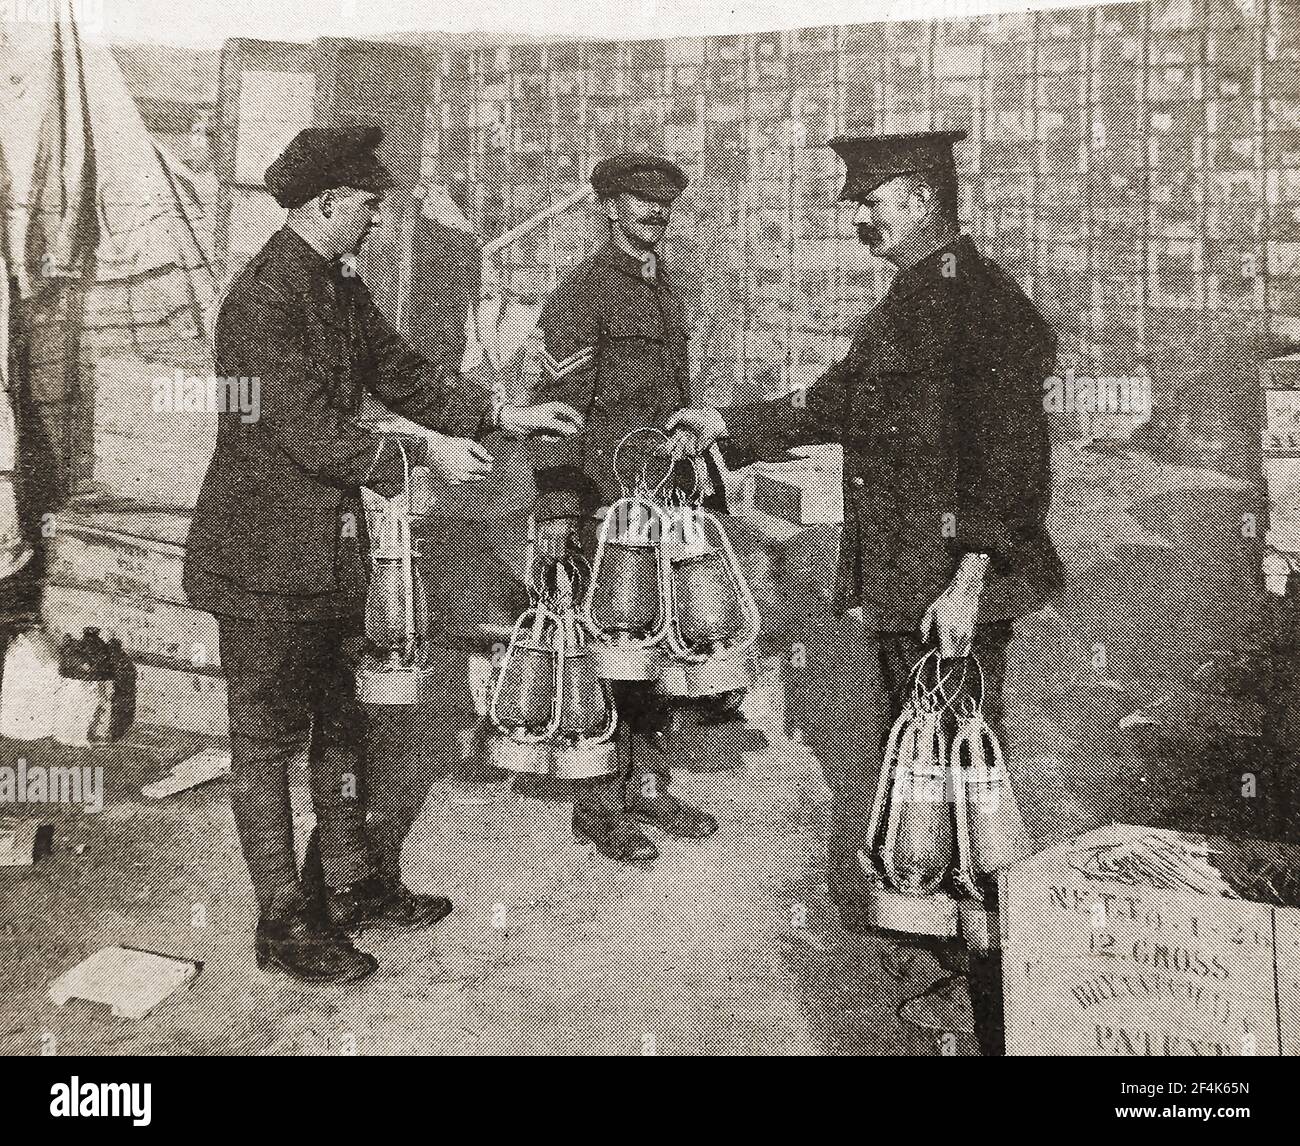 WWI le lieutenant Cassidy recueille les lanternes utilisées pendant dans la Suvia Évacuation de la baie (1915 décembre - Gallipoli) Banque D'Images